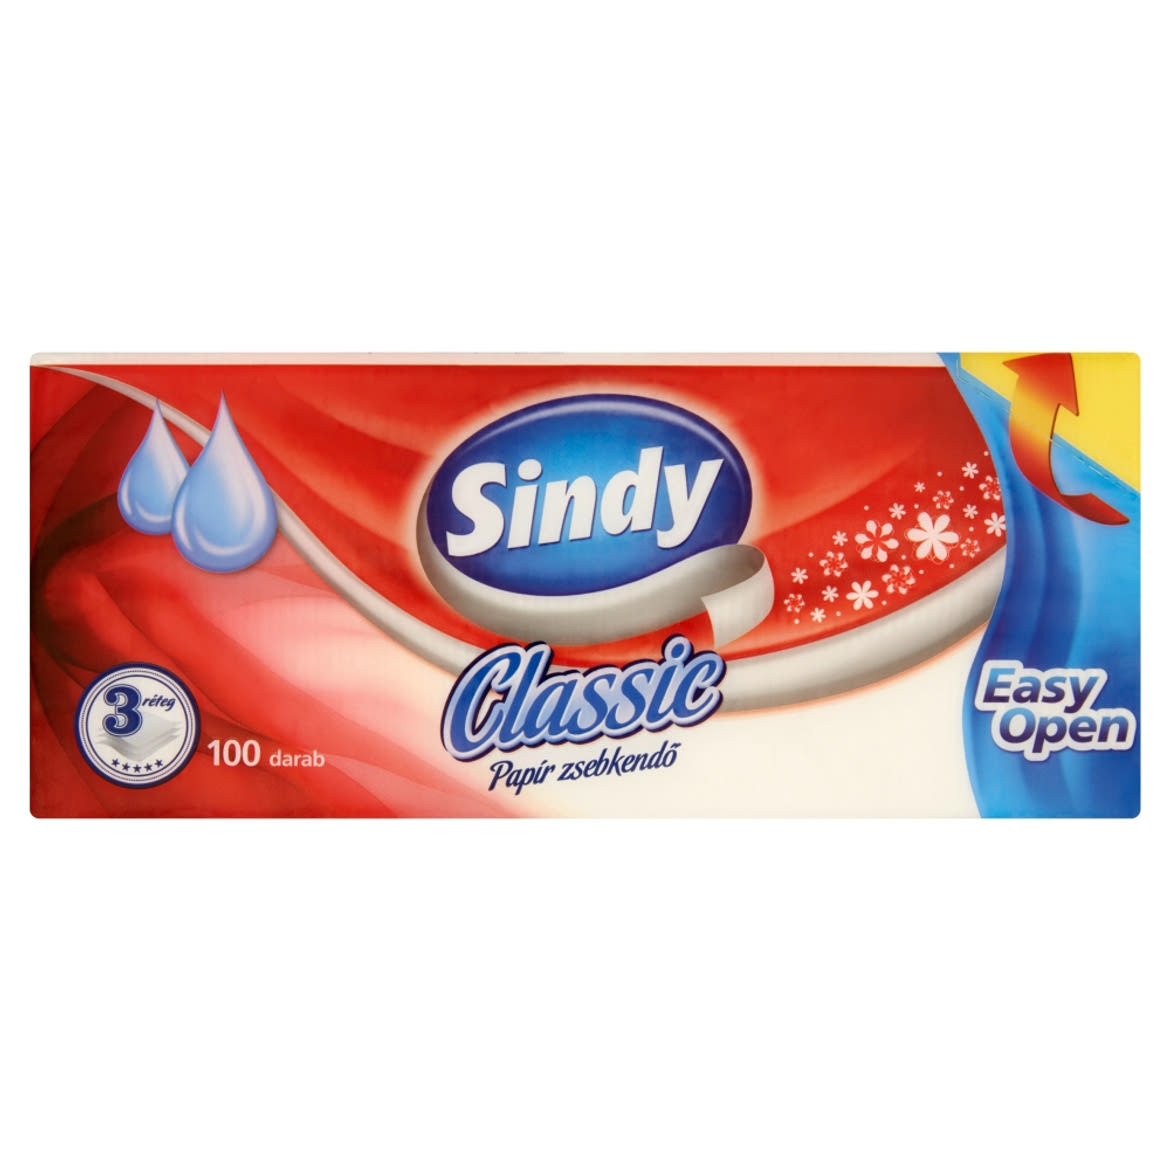 Sindy Classic papírzsebkendő 3 rétegű